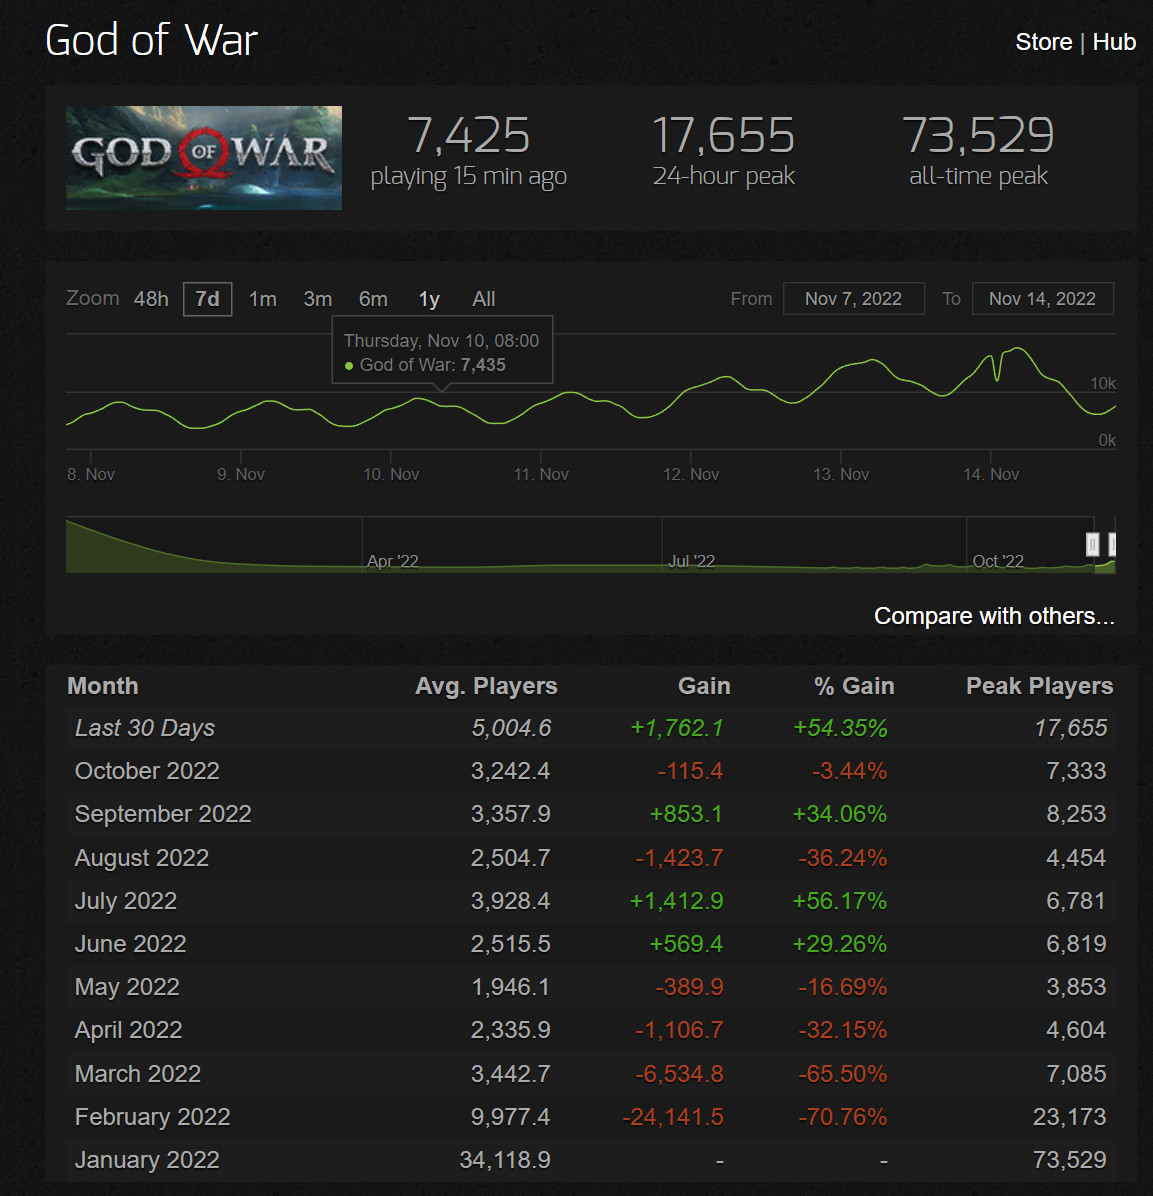 《战神5》发售后 《战神4》Steam在线增长50%